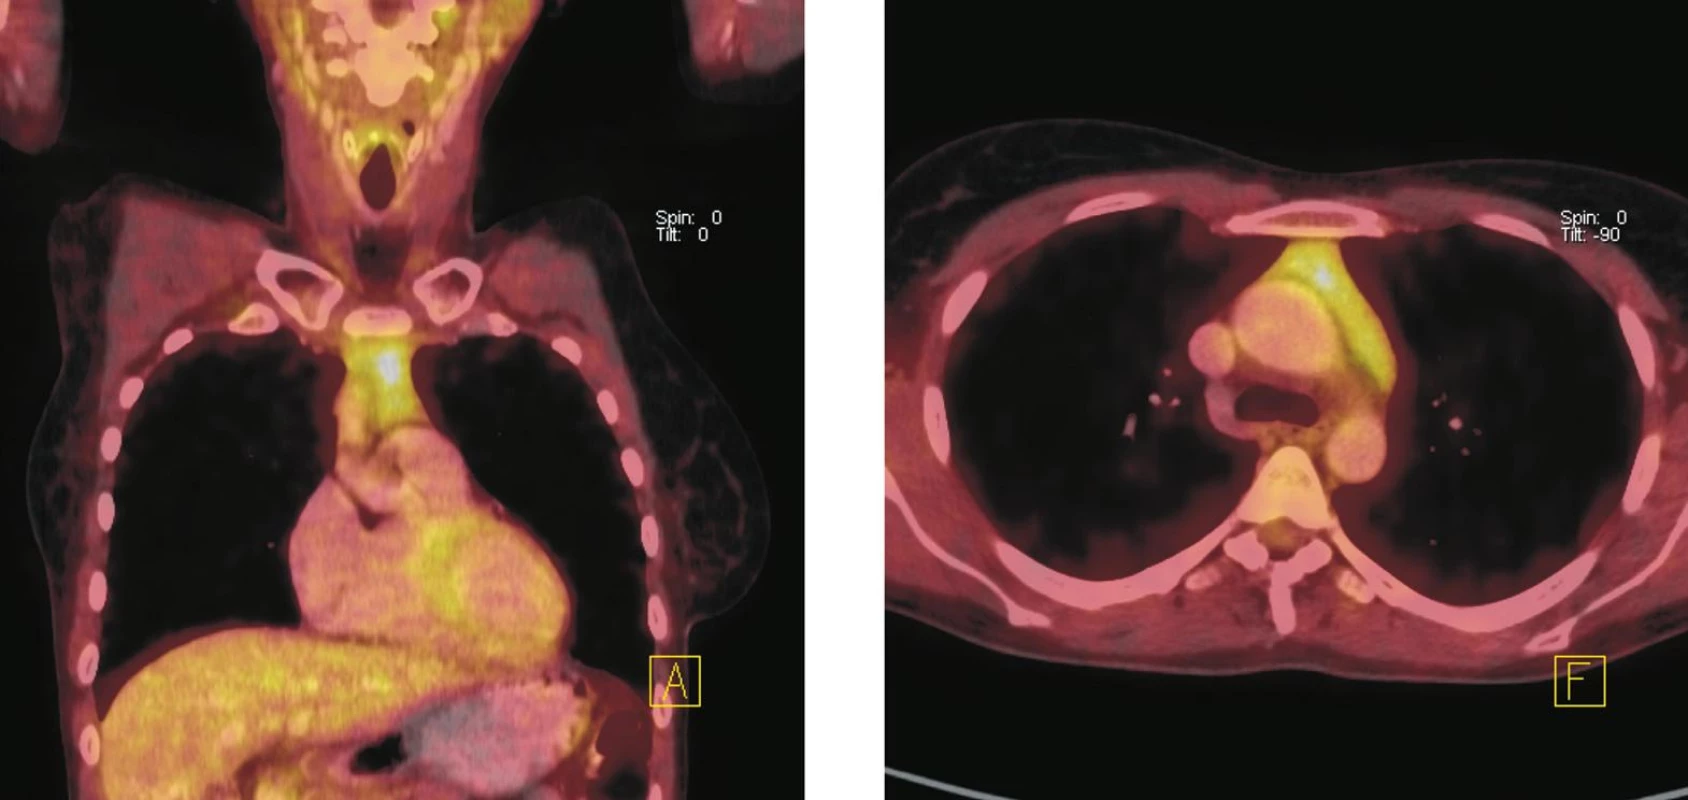 Fúze PET a CT řezů – koronální (vlevo), transverzální (vpravo). Zvýšená akumulace &lt;sup&gt;18&lt;/sup&gt;F-FDG v měkkotkáňové struktuře horního předního mediastina, která nebyla patrná při vstupním vyšetření před zahájením imunochemoterapie. Velikost ani charakter popsané struktury se při pozdějším kontrolním vyšetření nezměnily. Nález hodnocen jako aktivace tkáně thymu po chemoterapii.